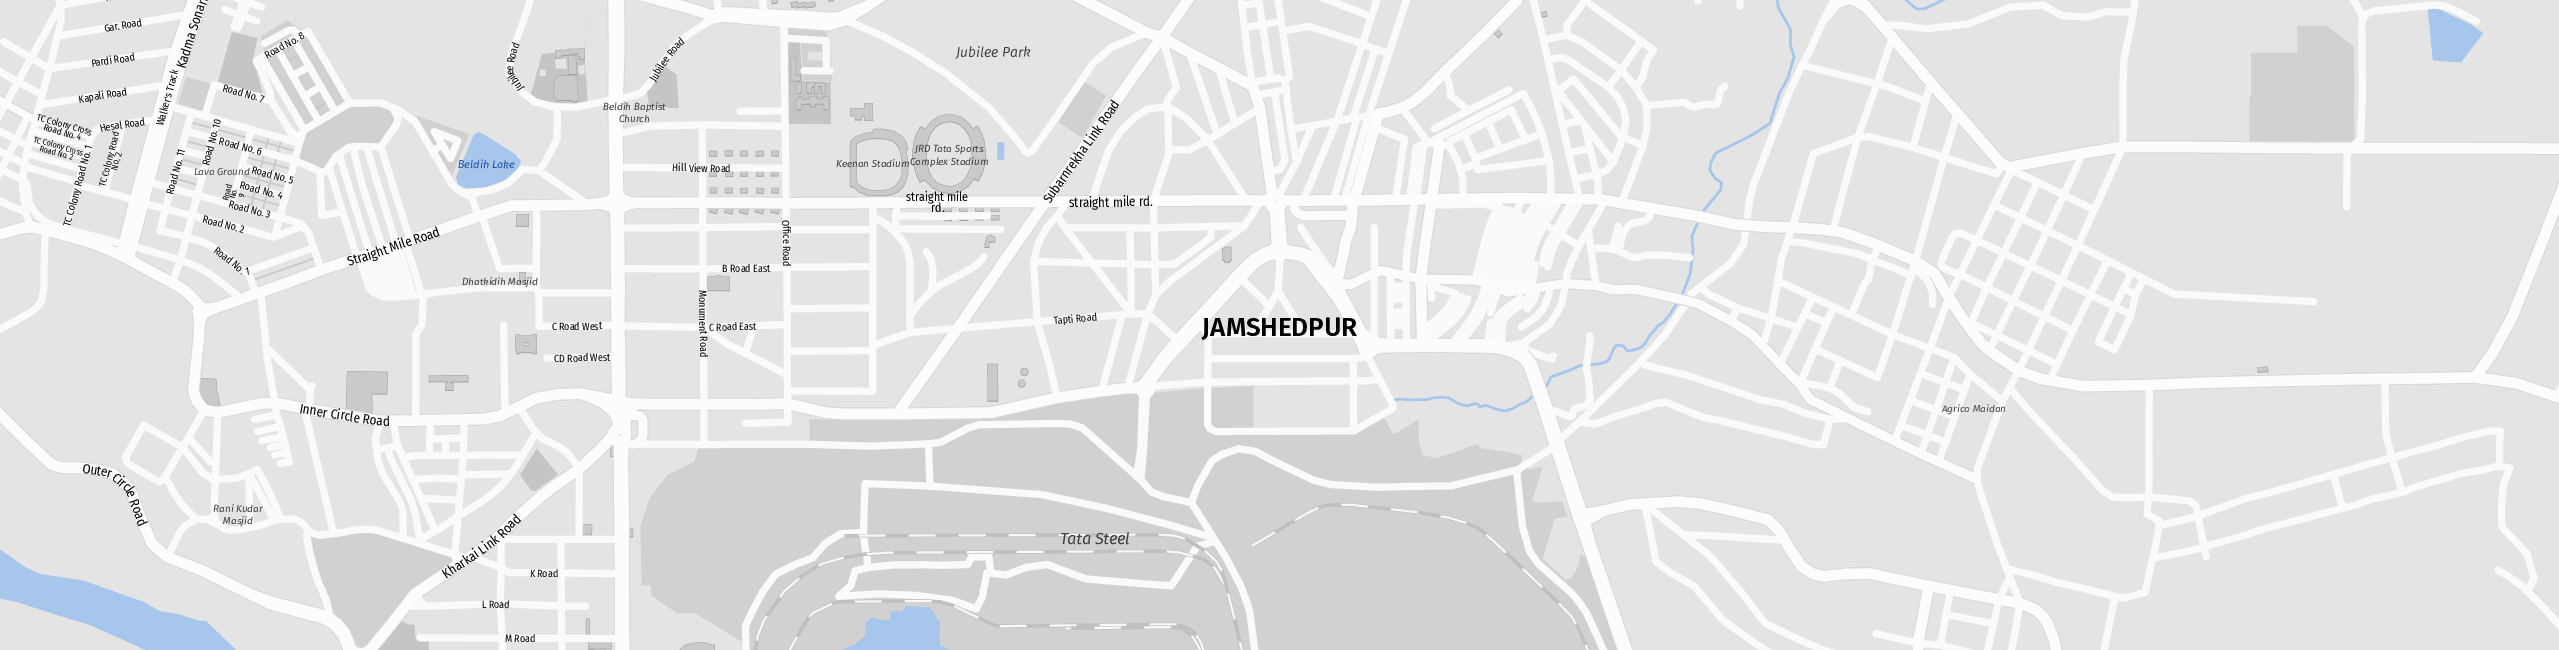 Stadtplan Jamshedpur zum Downloaden.